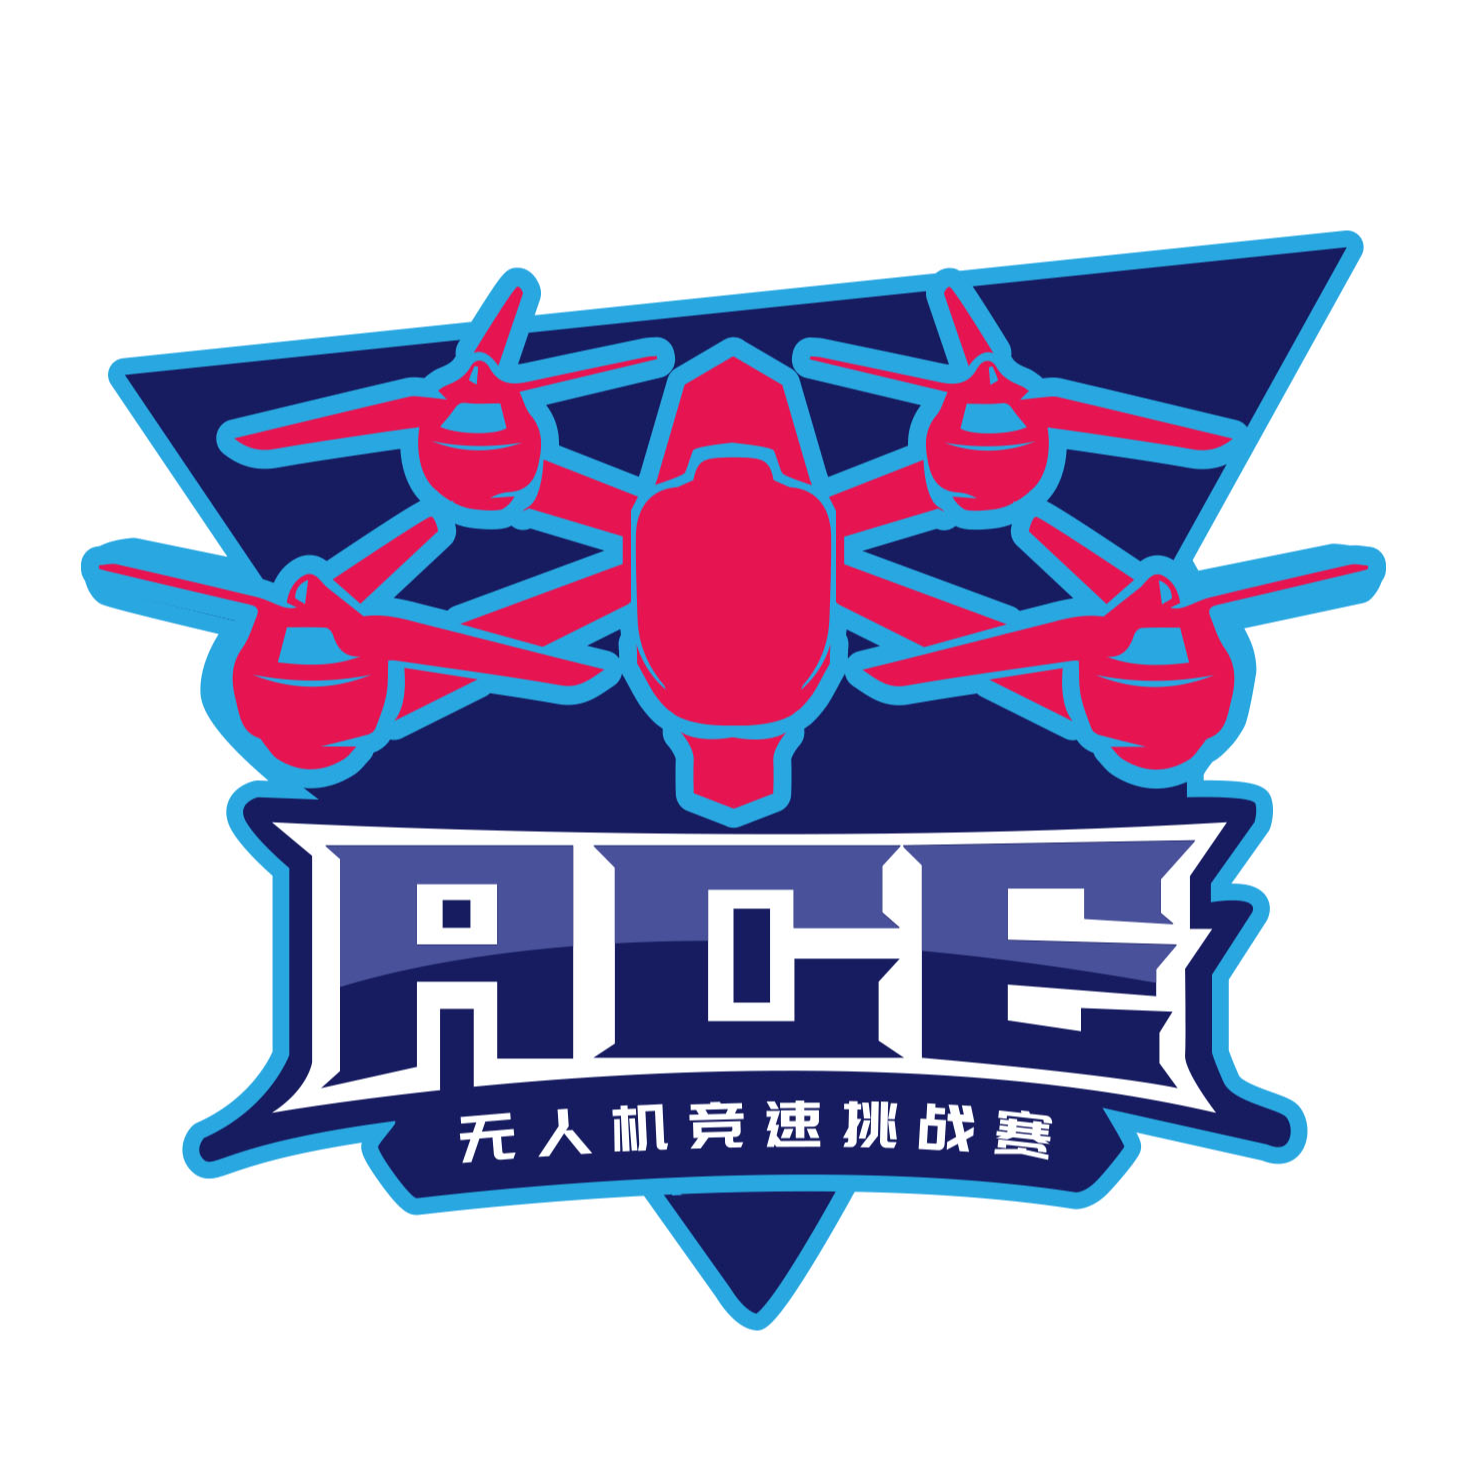 【ACE**竞速挑战赛】可提供展位展板赛道广告位等，寻求赞助合作